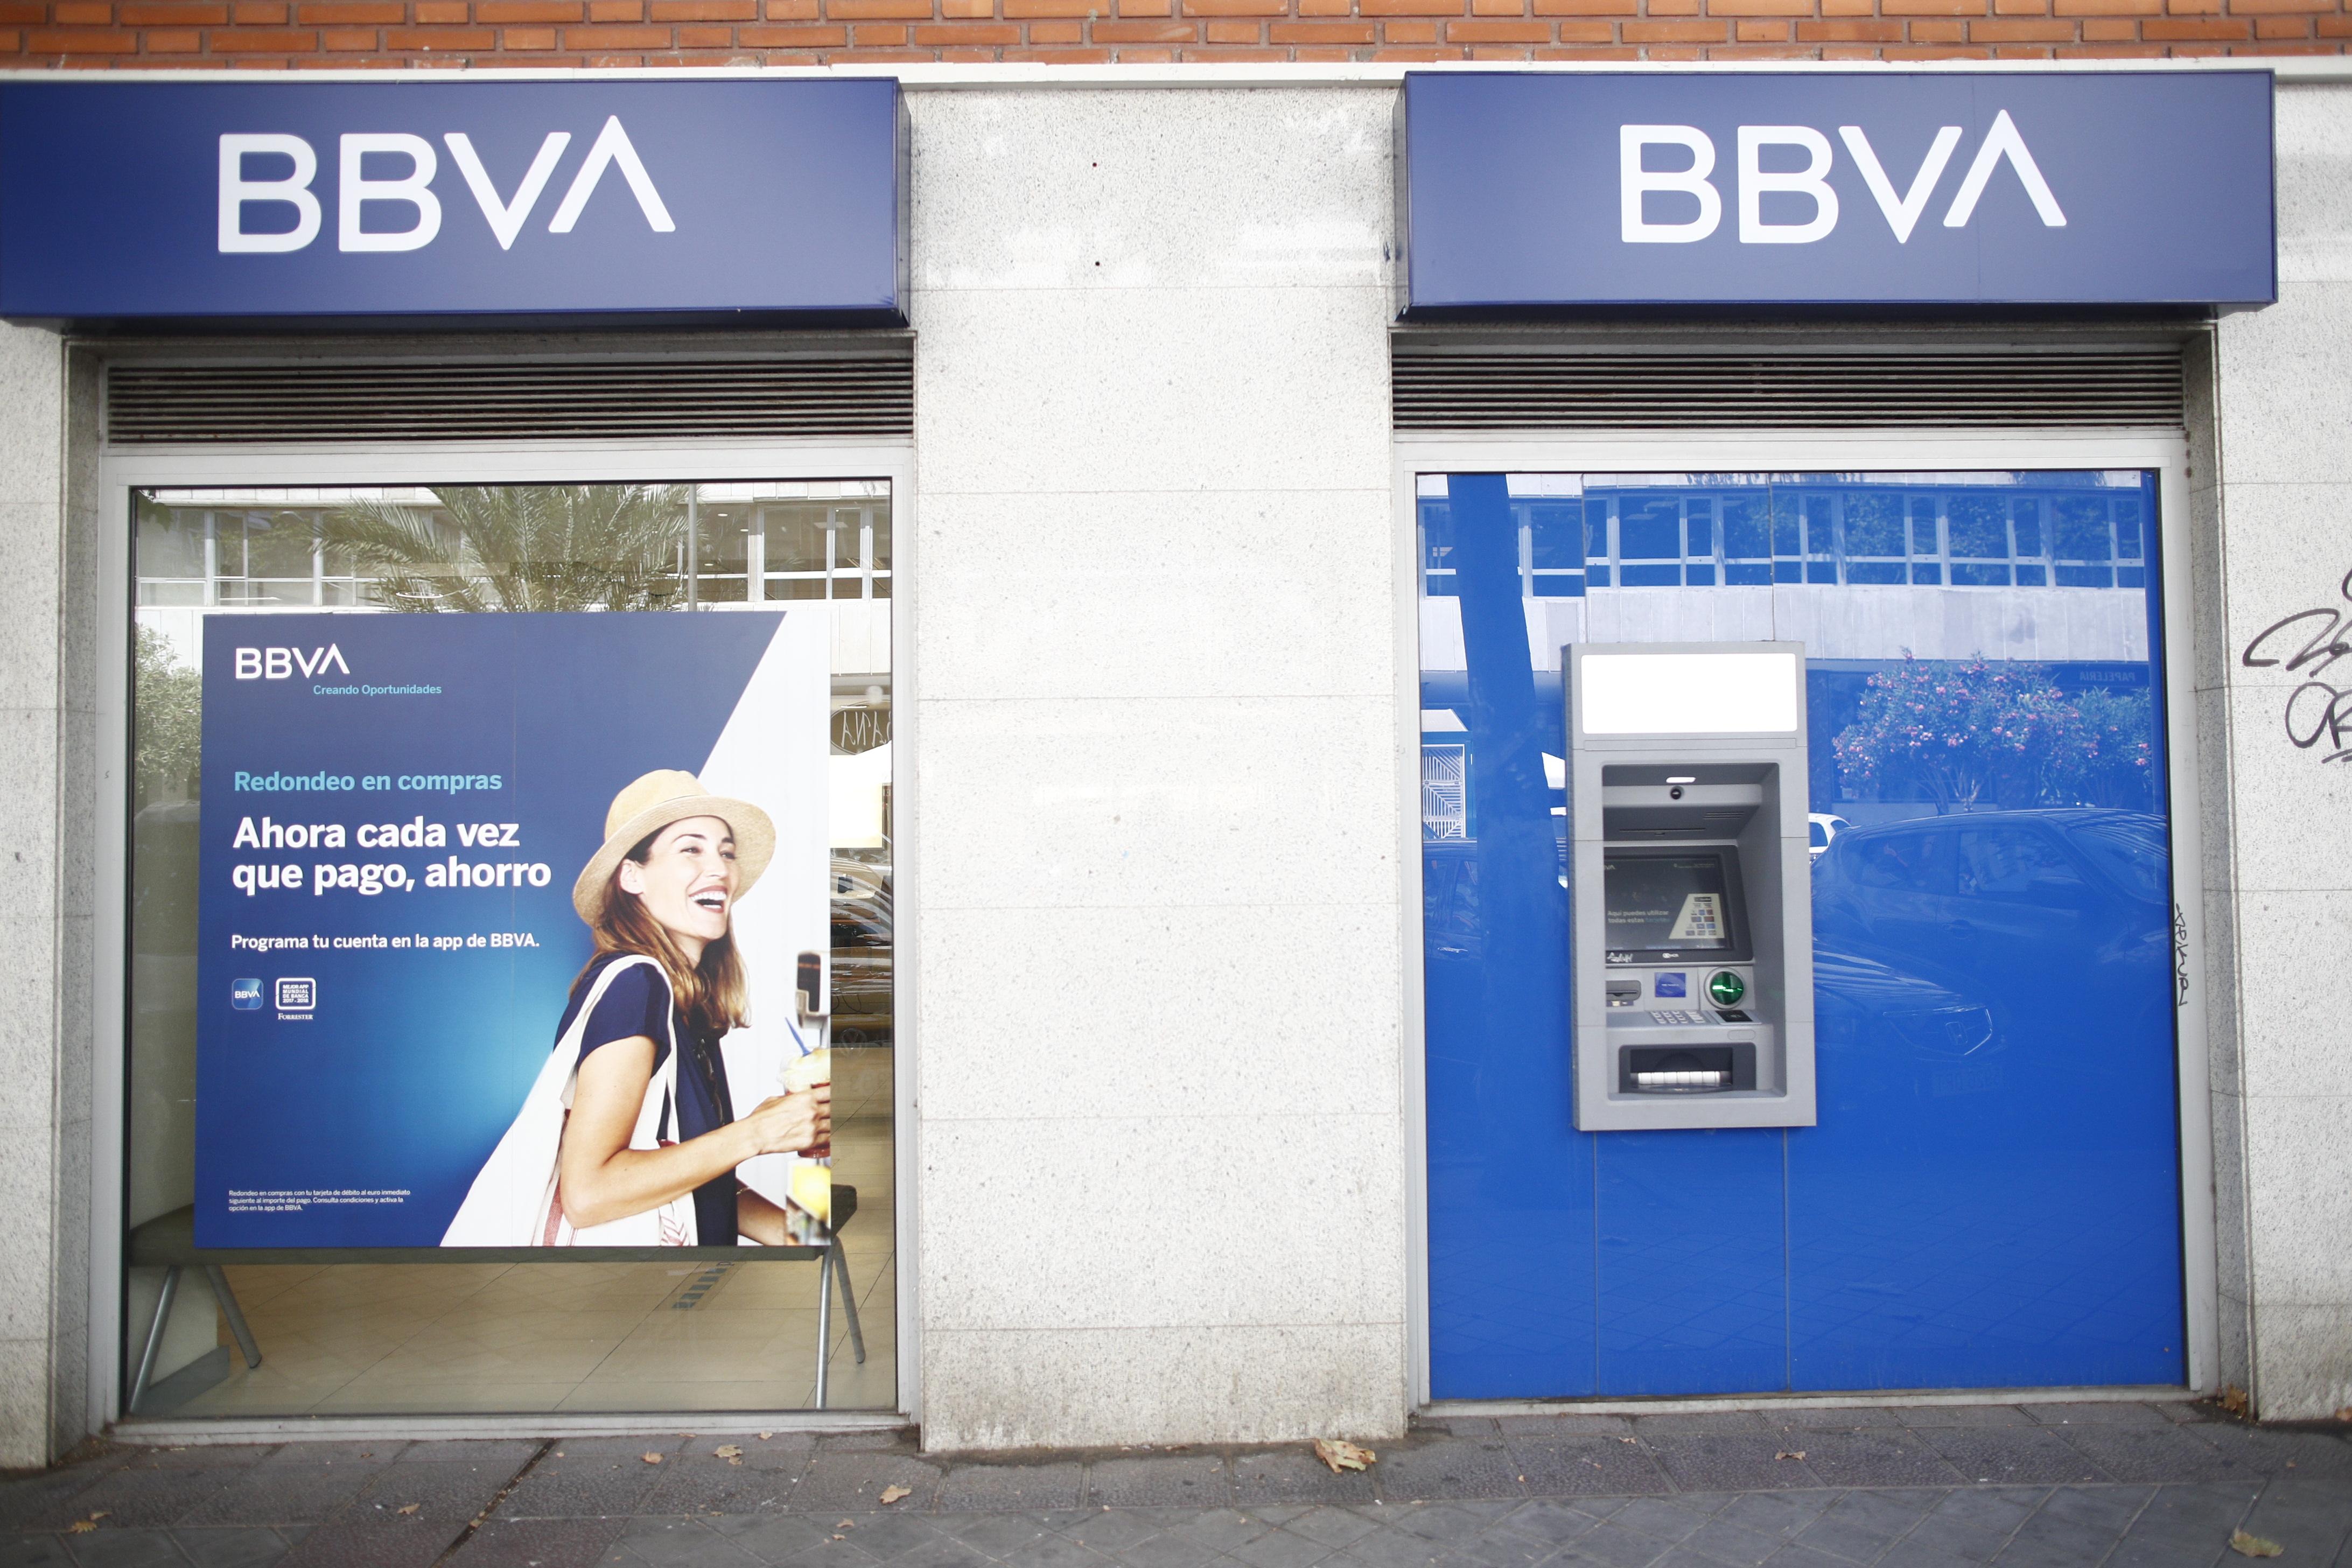 Imagen de una oficina y cajero del BBVA en Madrid con su nuevo logo 